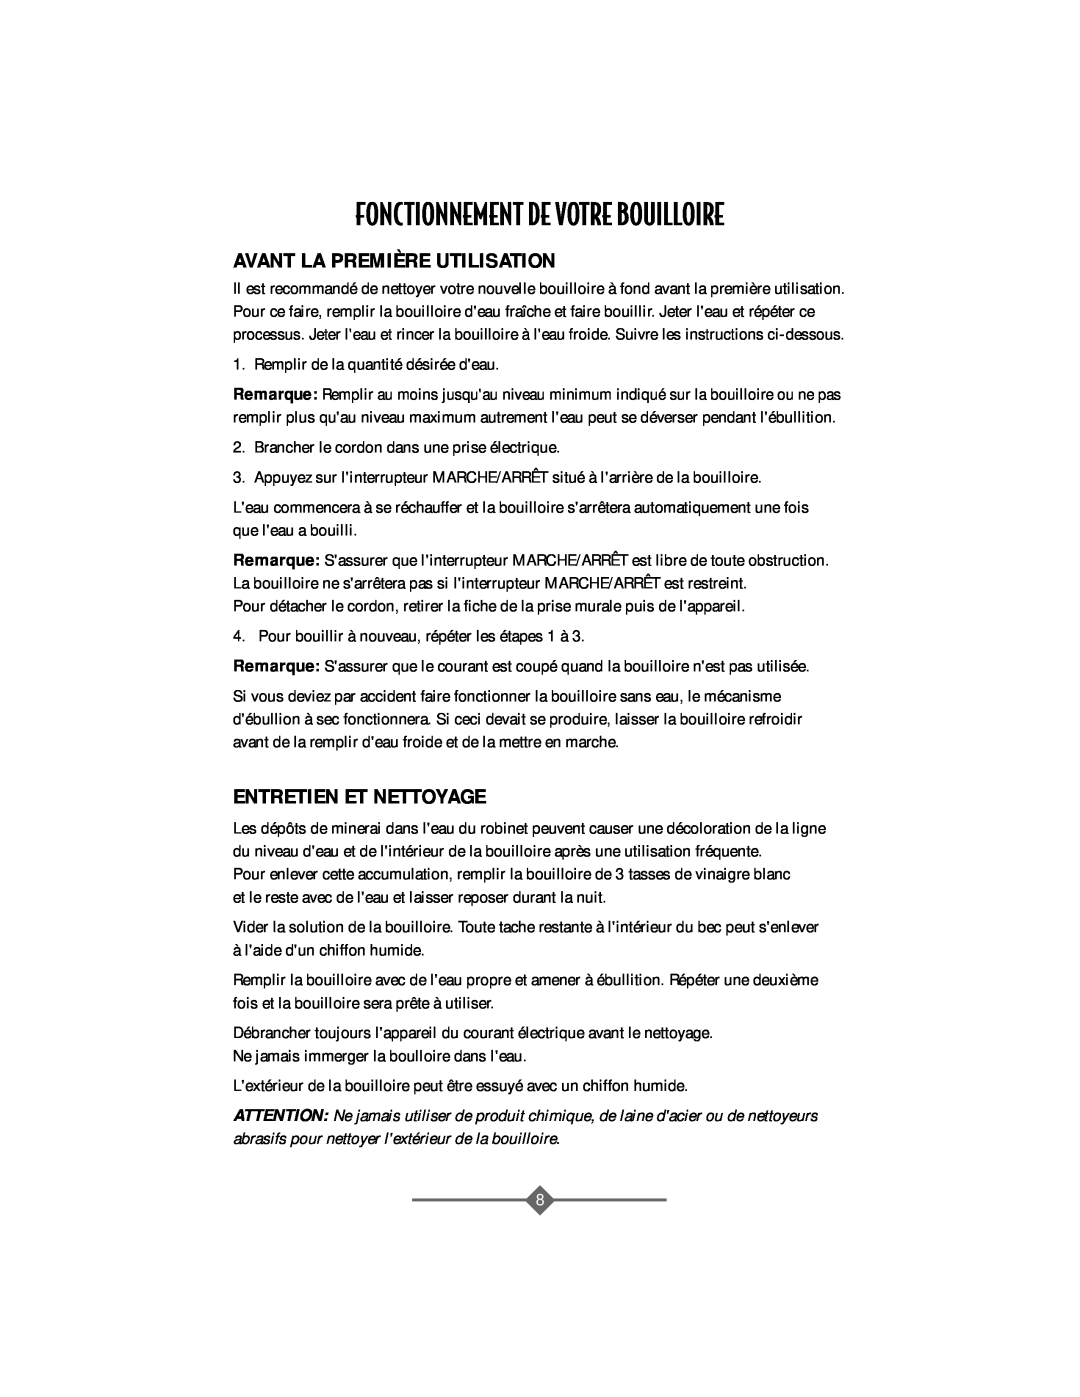 Sunbeam 3208 instruction manual Fonctionnement De Votre Bouilloire, Avant La Première Utilisation, Entretien Et Nettoyage 